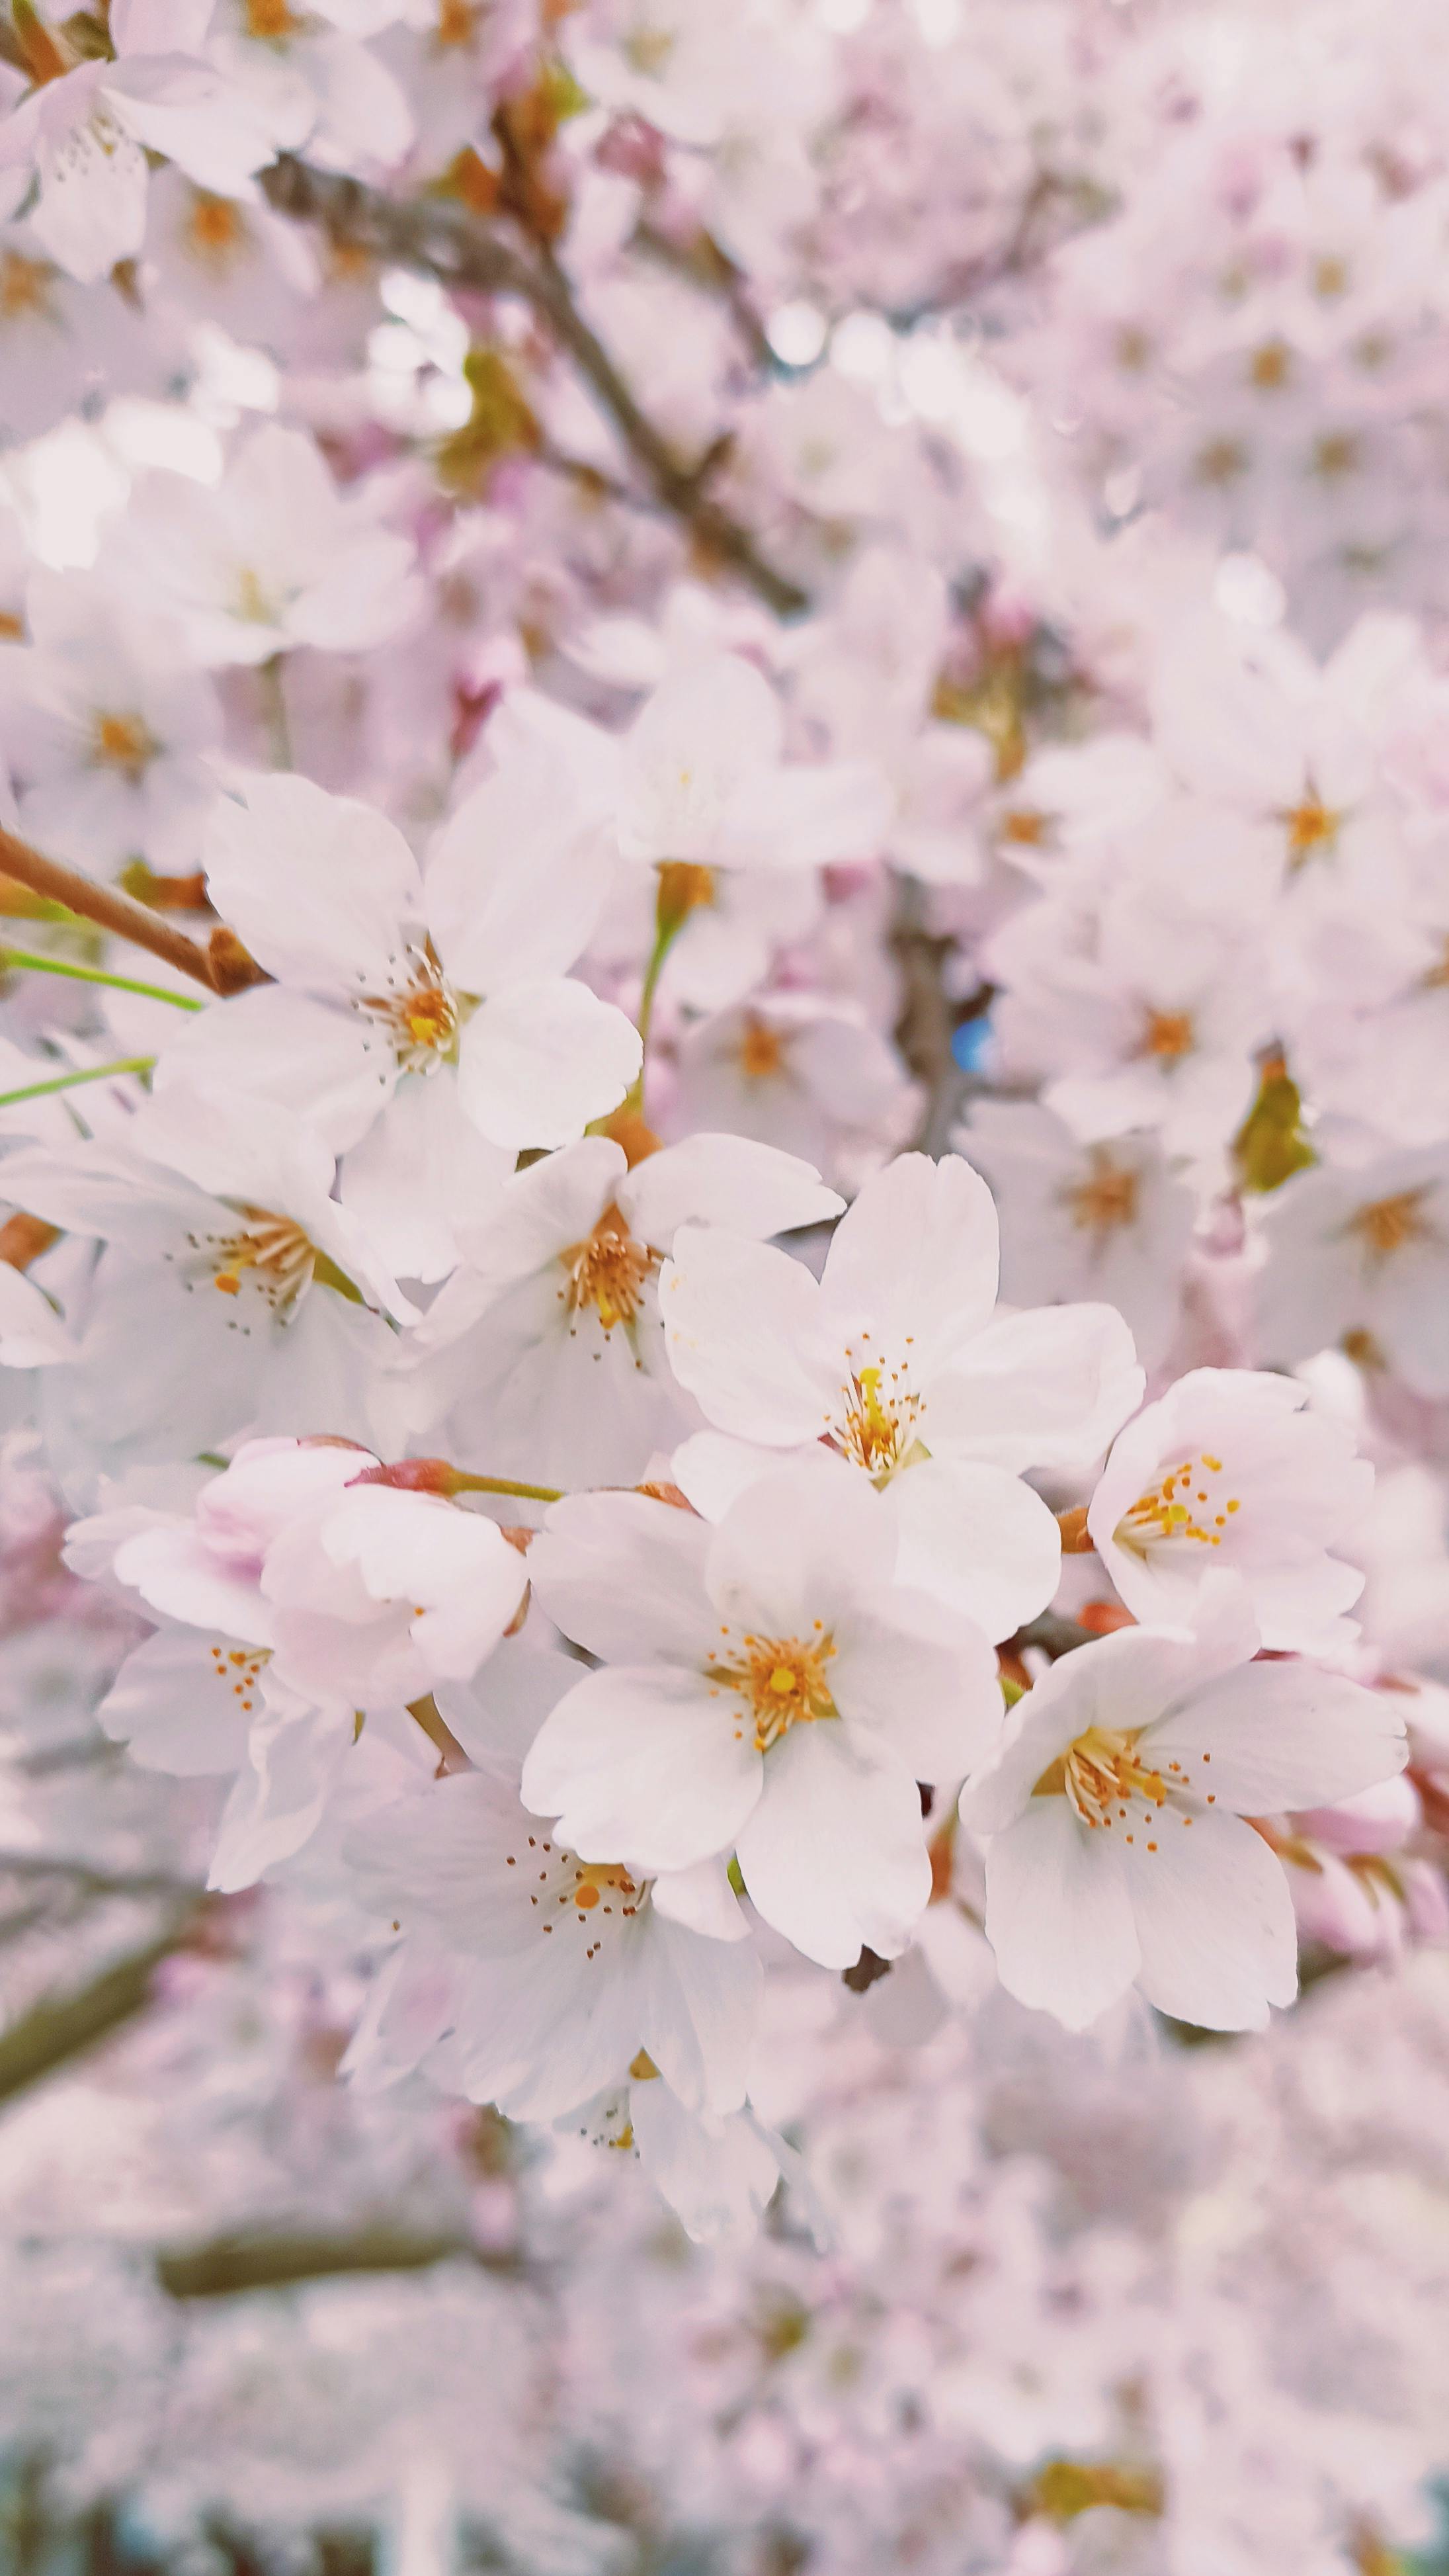 Mê mẩn ngắm hoa anh đào ở Nhật Bản | Báo Pháp Luật TP. Hồ Chí Minh